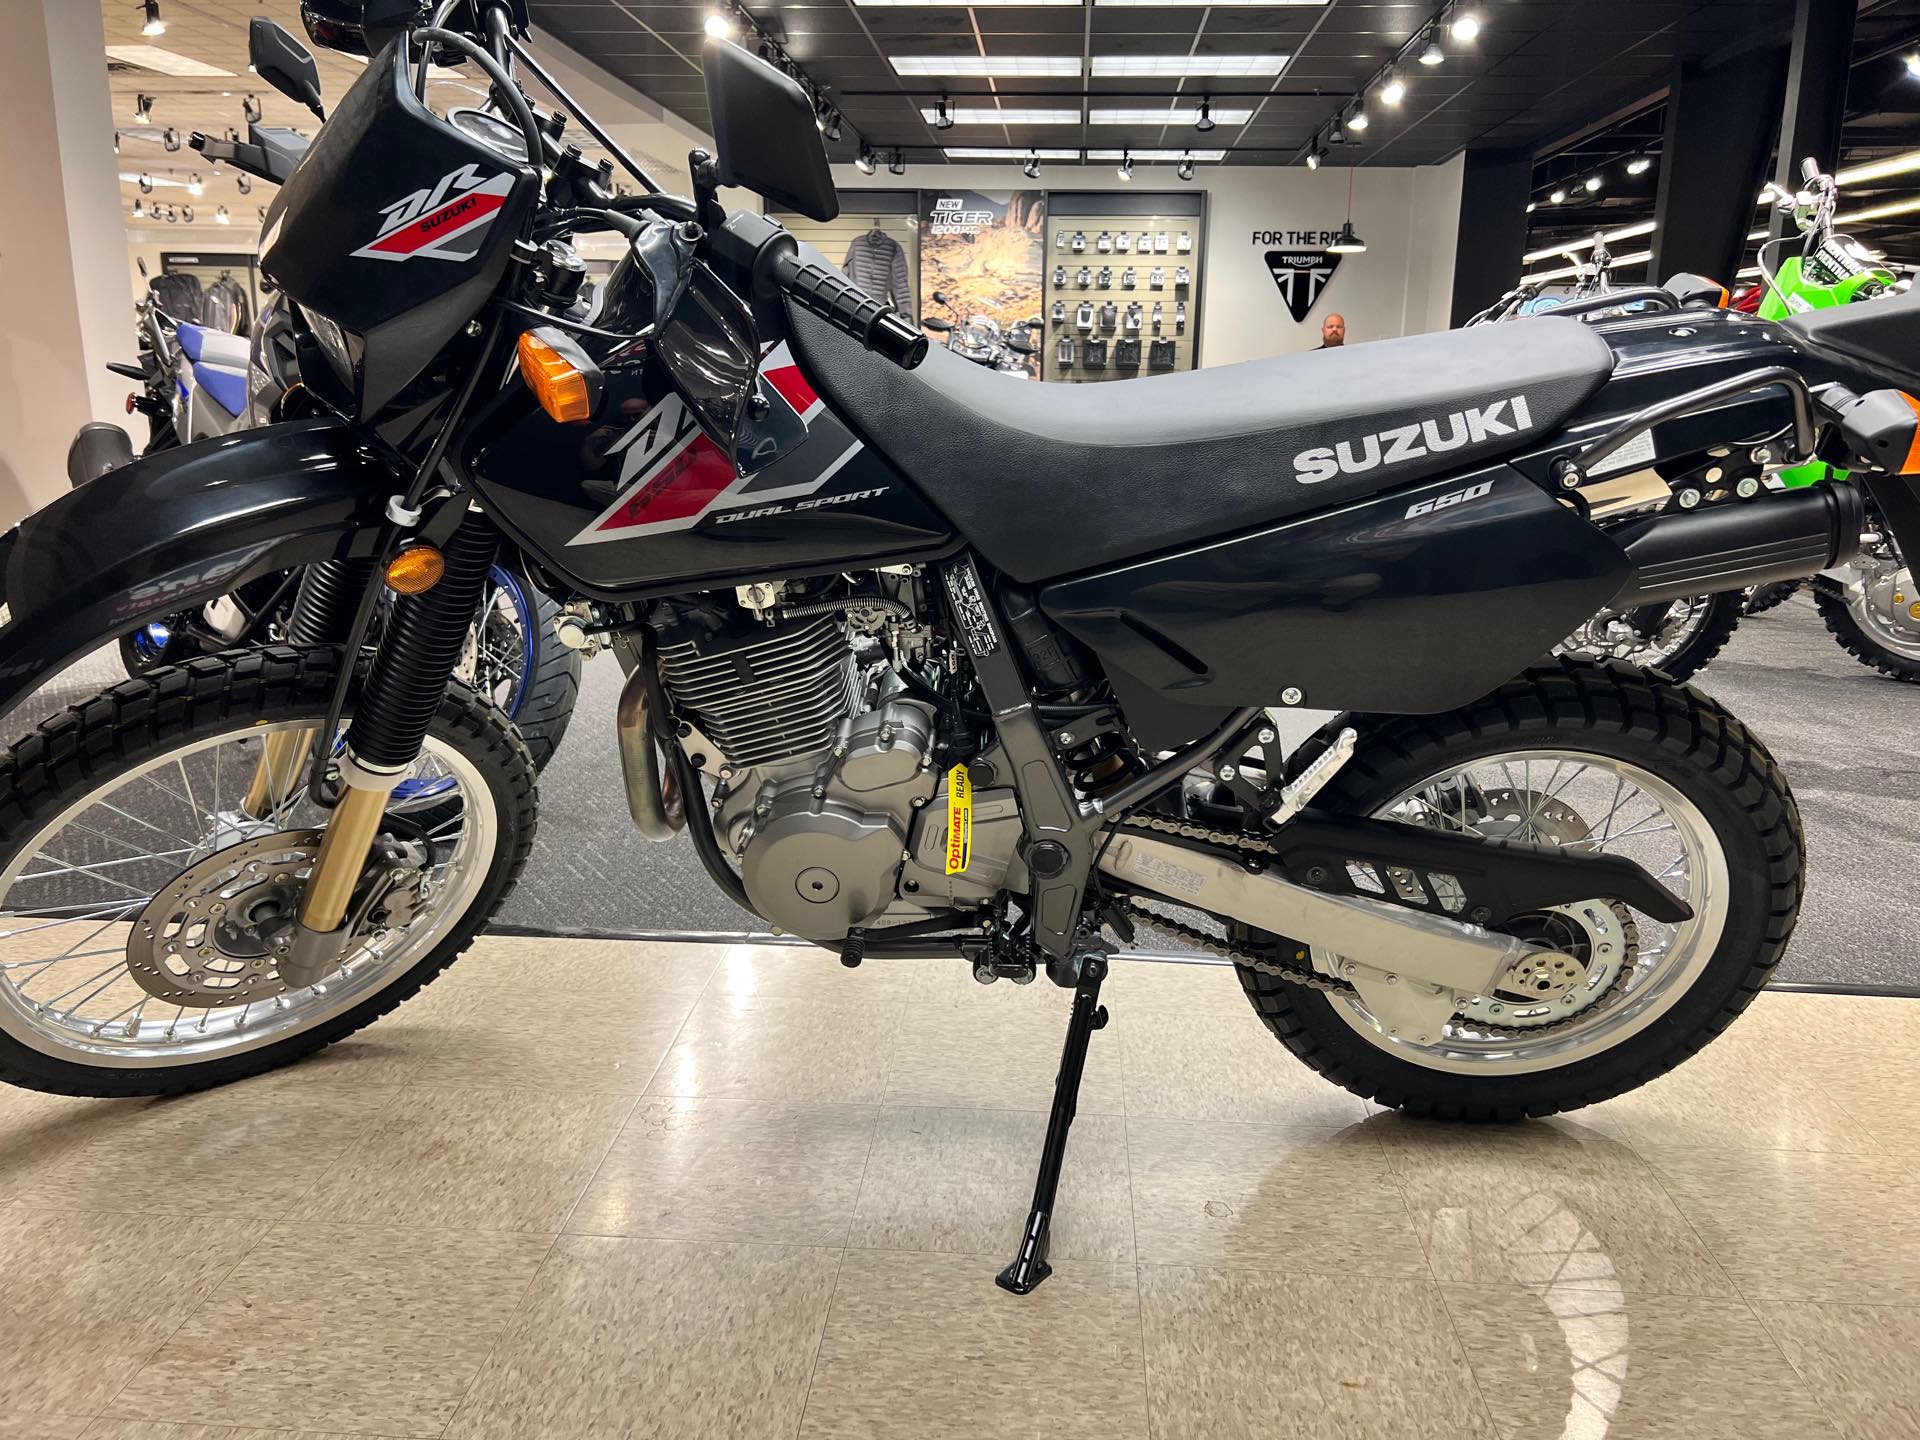 2022 Suzuki DR 650S at Sloans Motorcycle ATV, Murfreesboro, TN, 37129